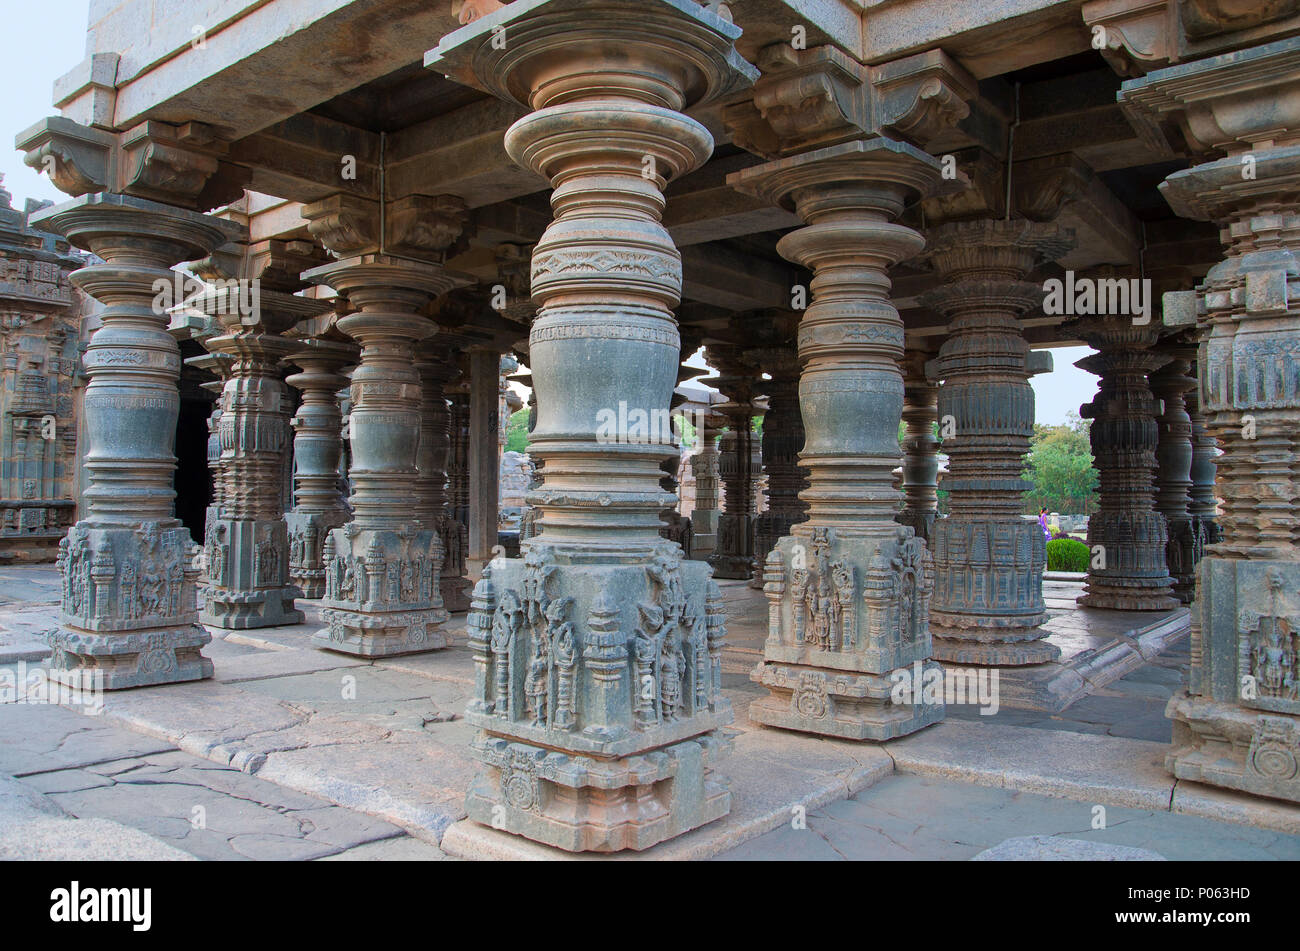 Carved pillars of the Mahadeva Temple, was built circa 1112 CE by Mahadeva, Itagi, Karnataka, India Stock Photo